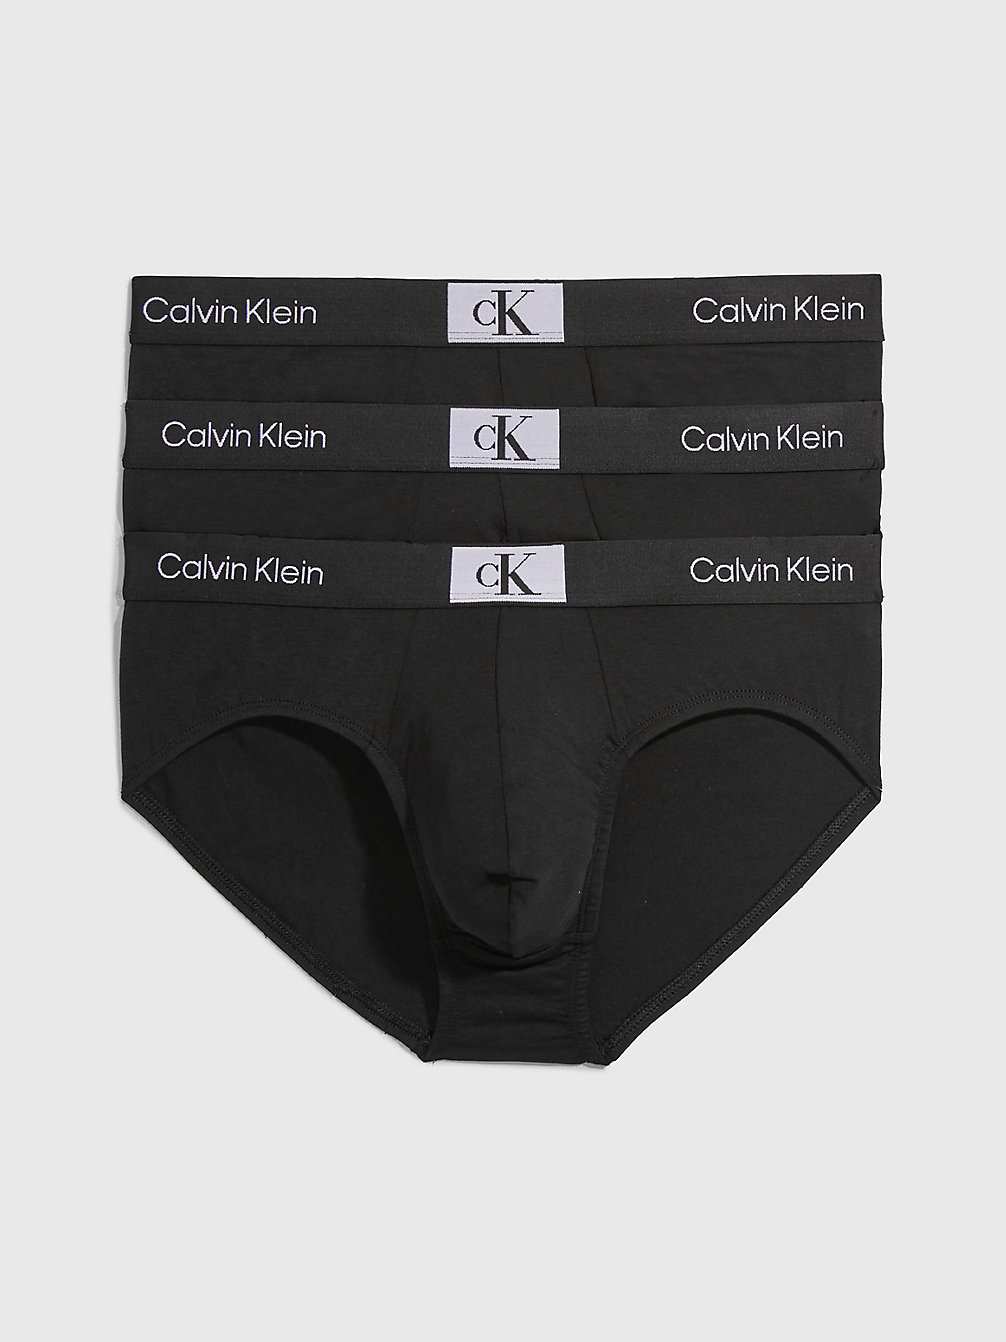 BLACK/BLACK/BLACK > 3er-Pack Slips - Ck96 > undefined Herren - Calvin Klein